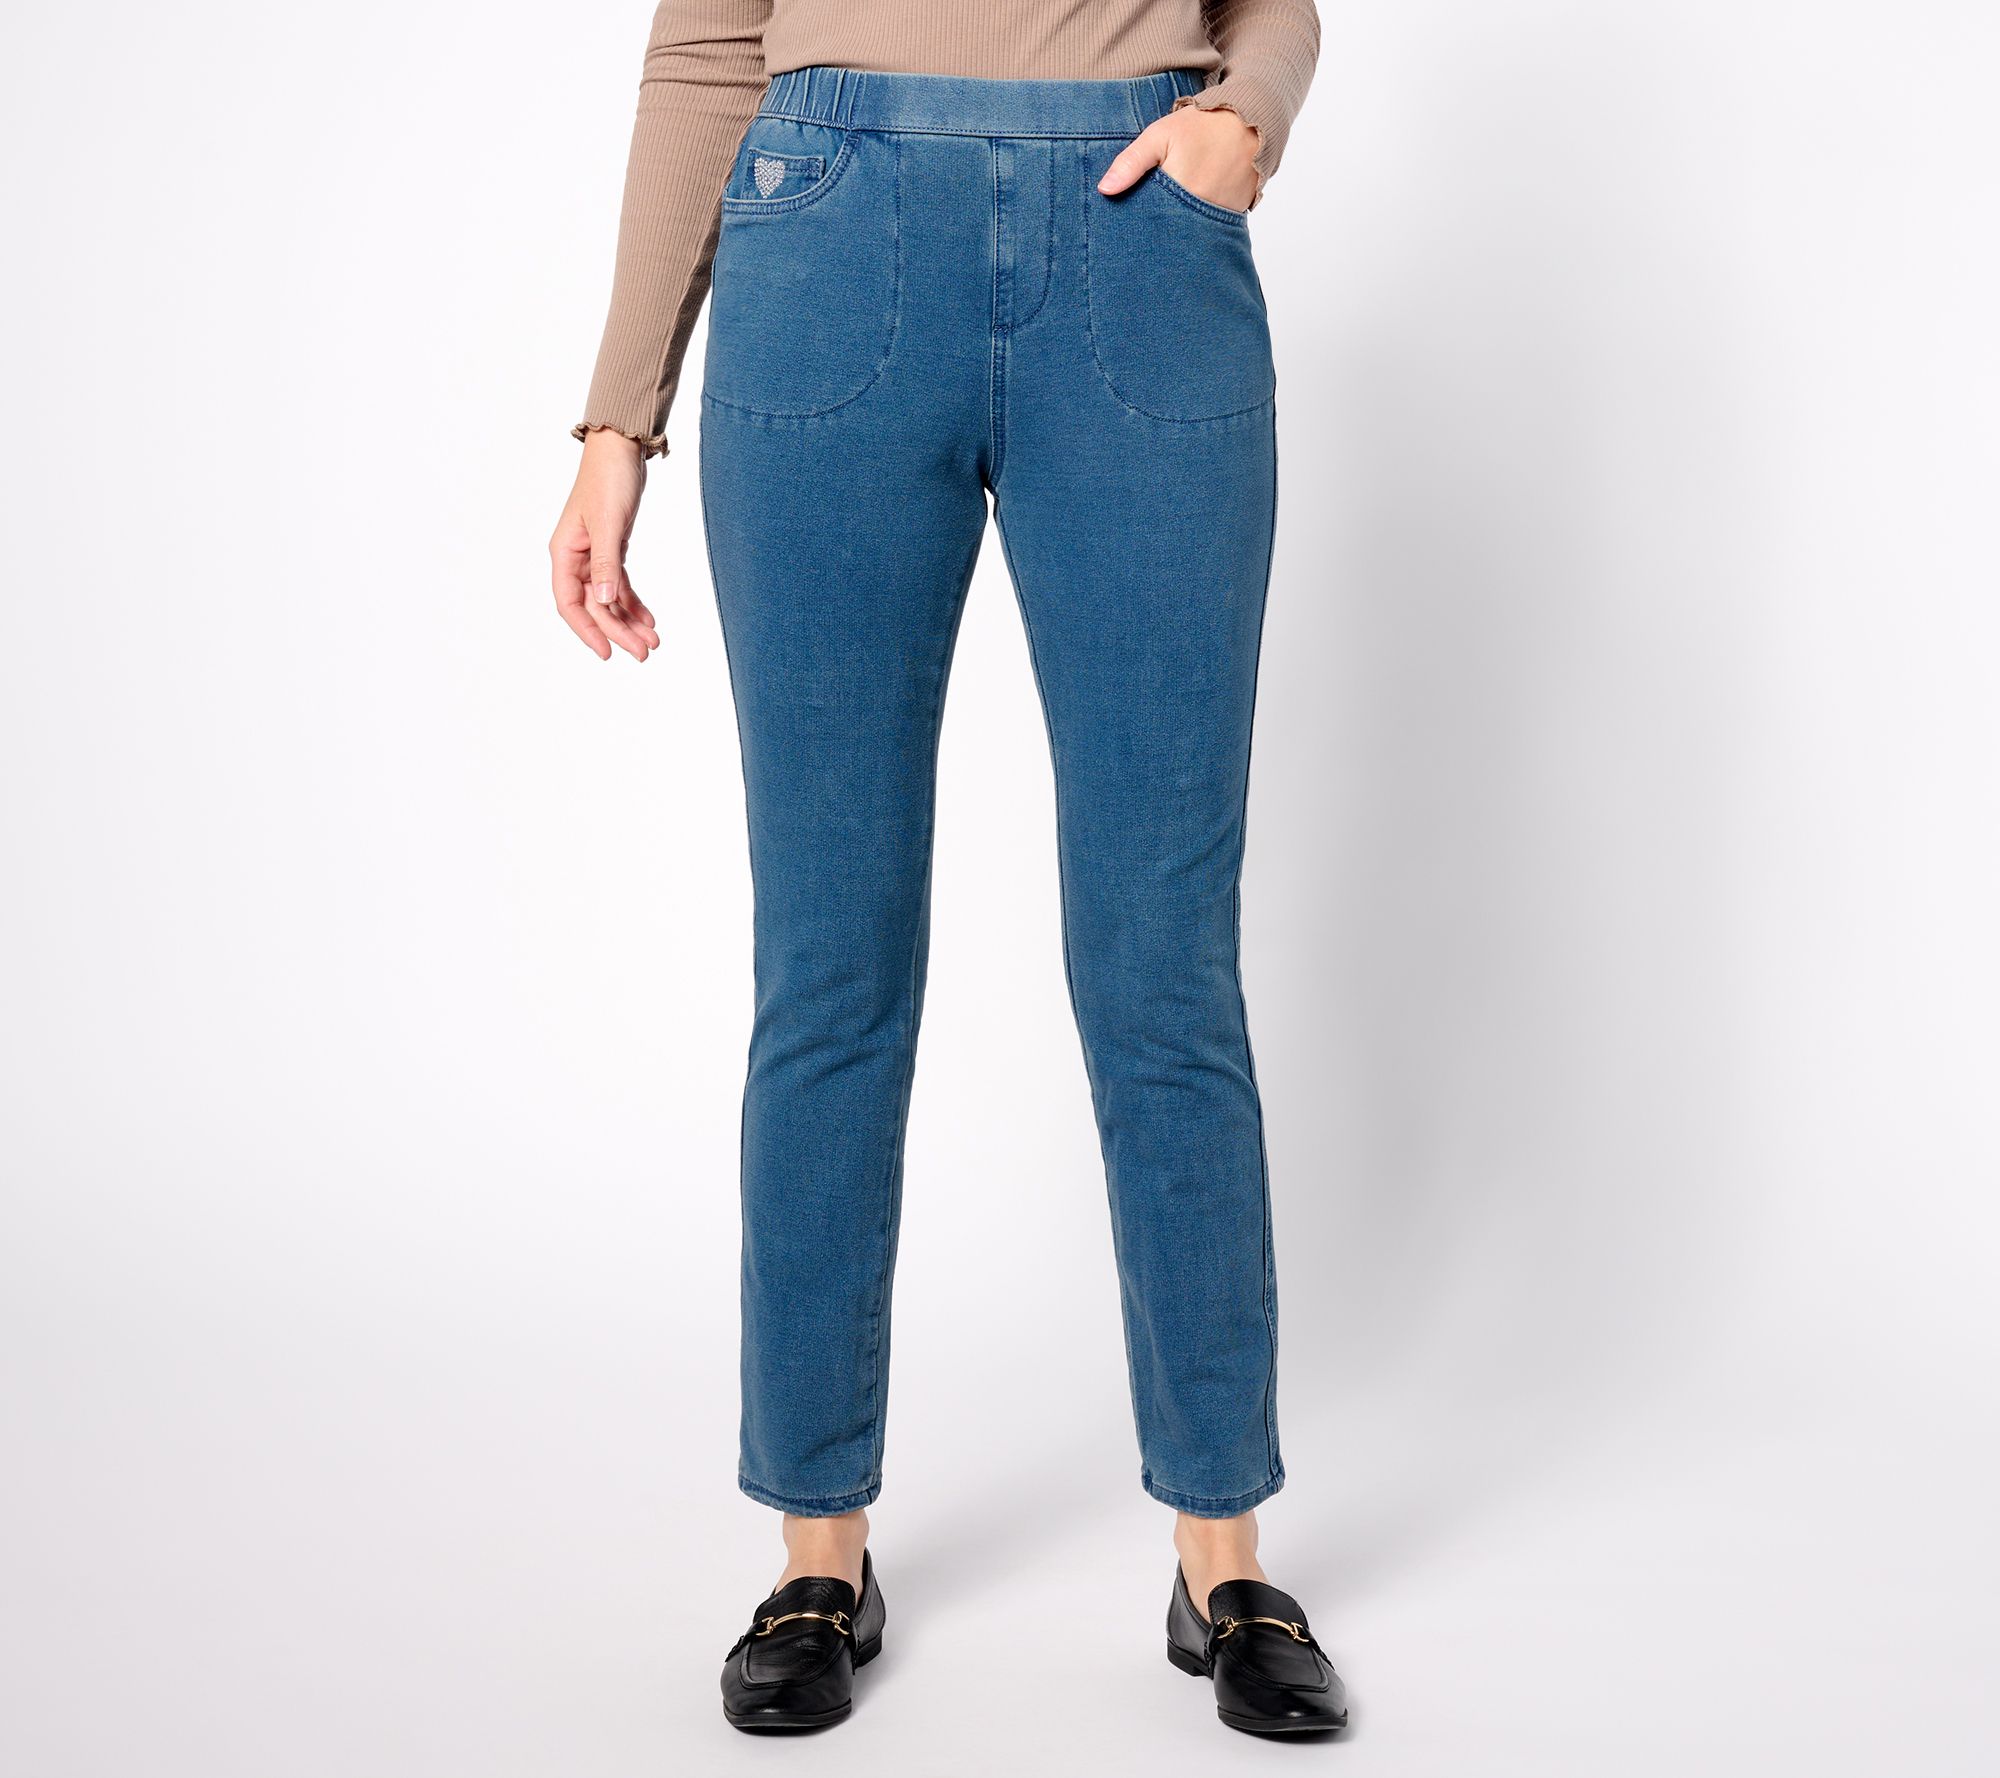 Quacker Factory Regular DreamJeannes Pull-On Slim Leg Jeans - QVC.com